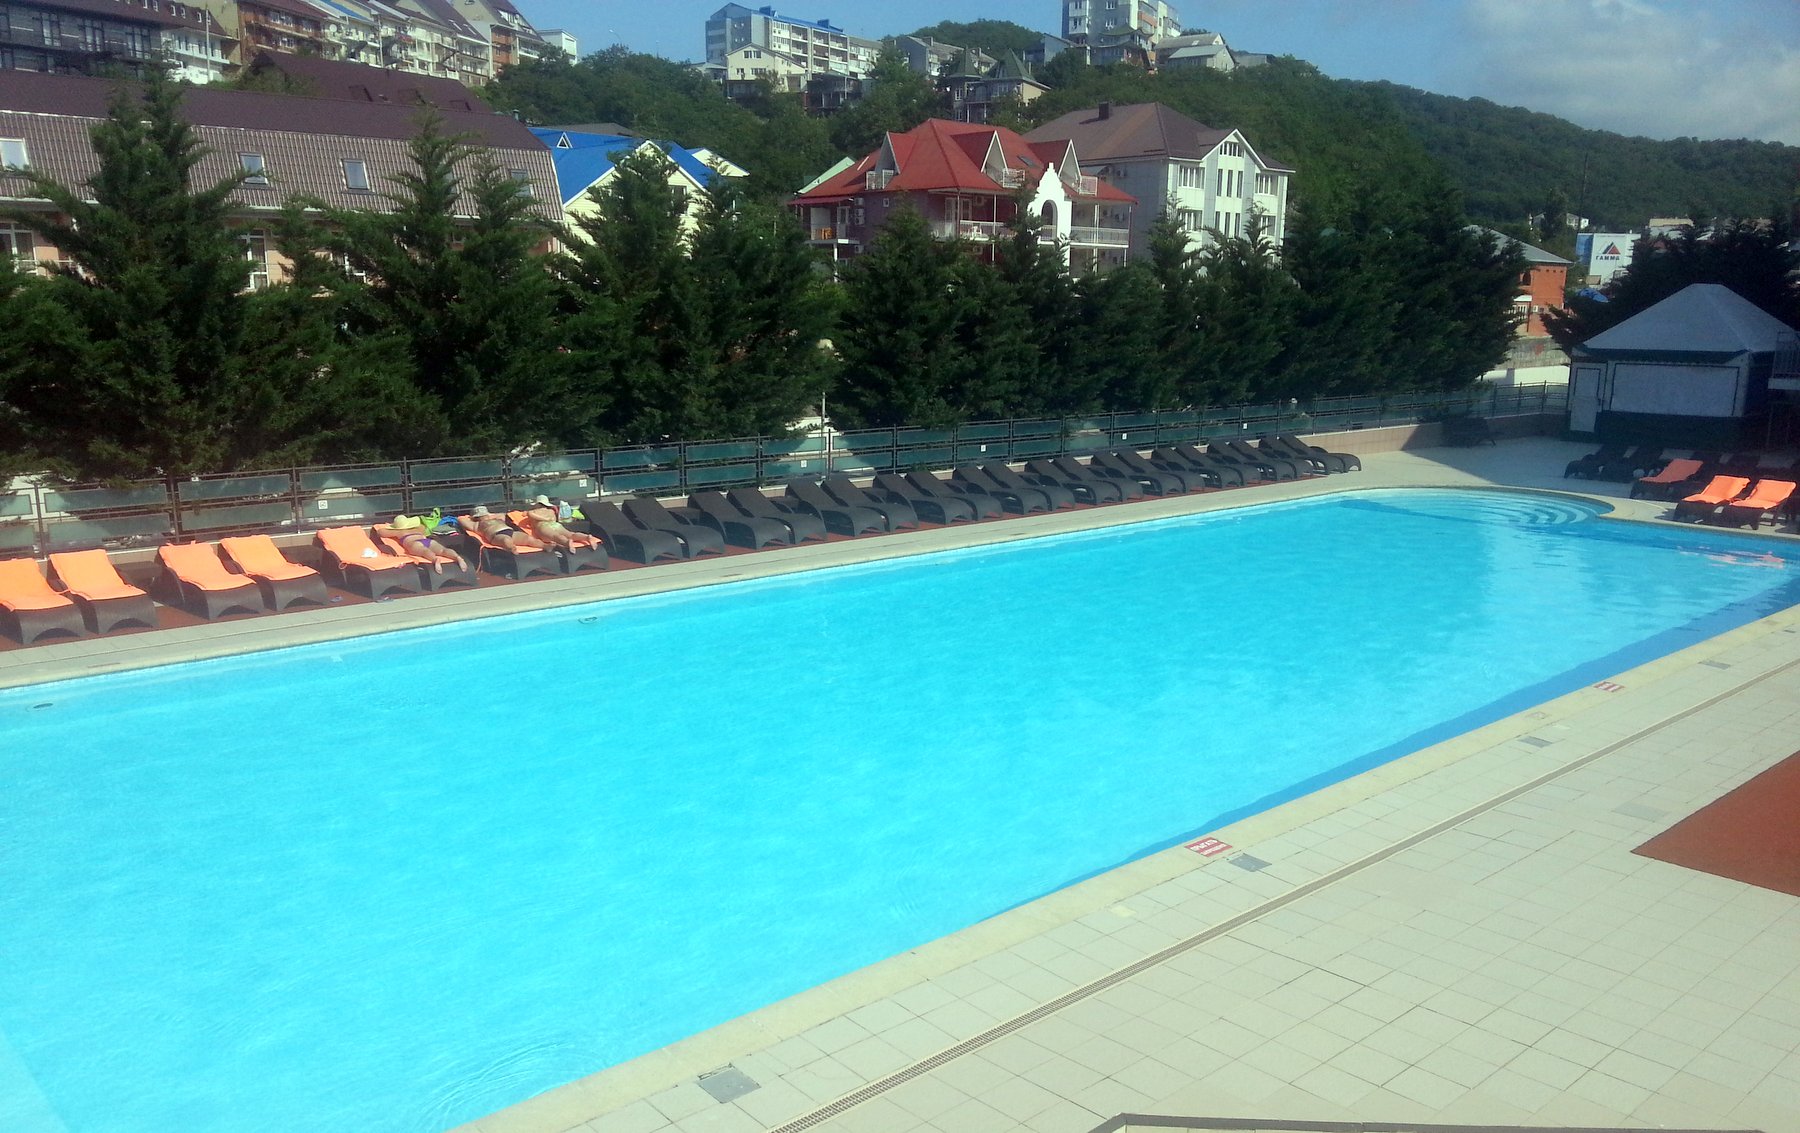 АТОР: Убедить крымских отельеров отказаться от повышения цен пока не удалось